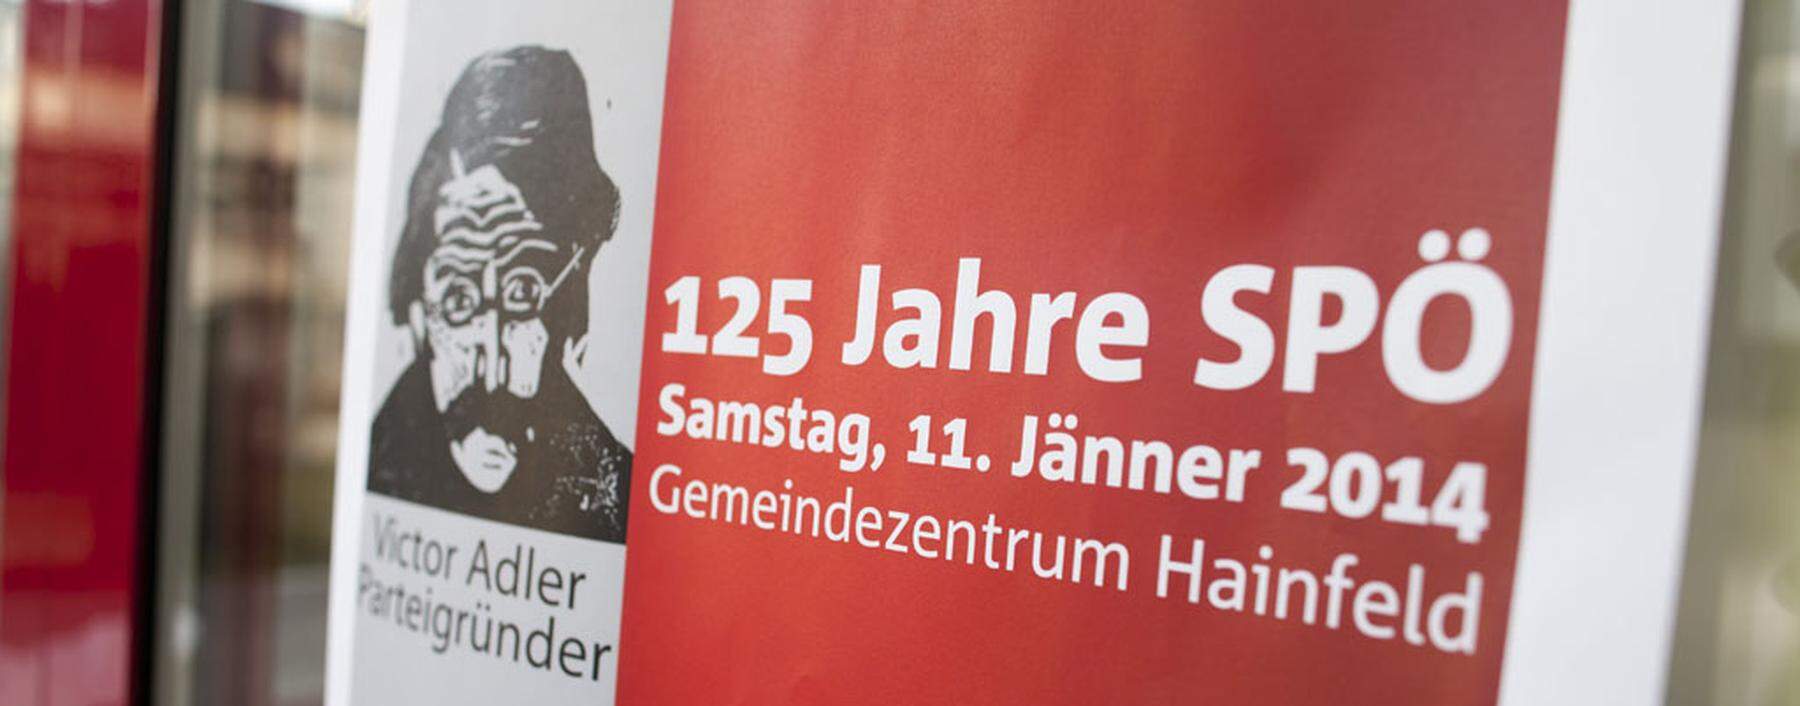 125 Jahre SP� Feierlichkeiten in Hainfeld